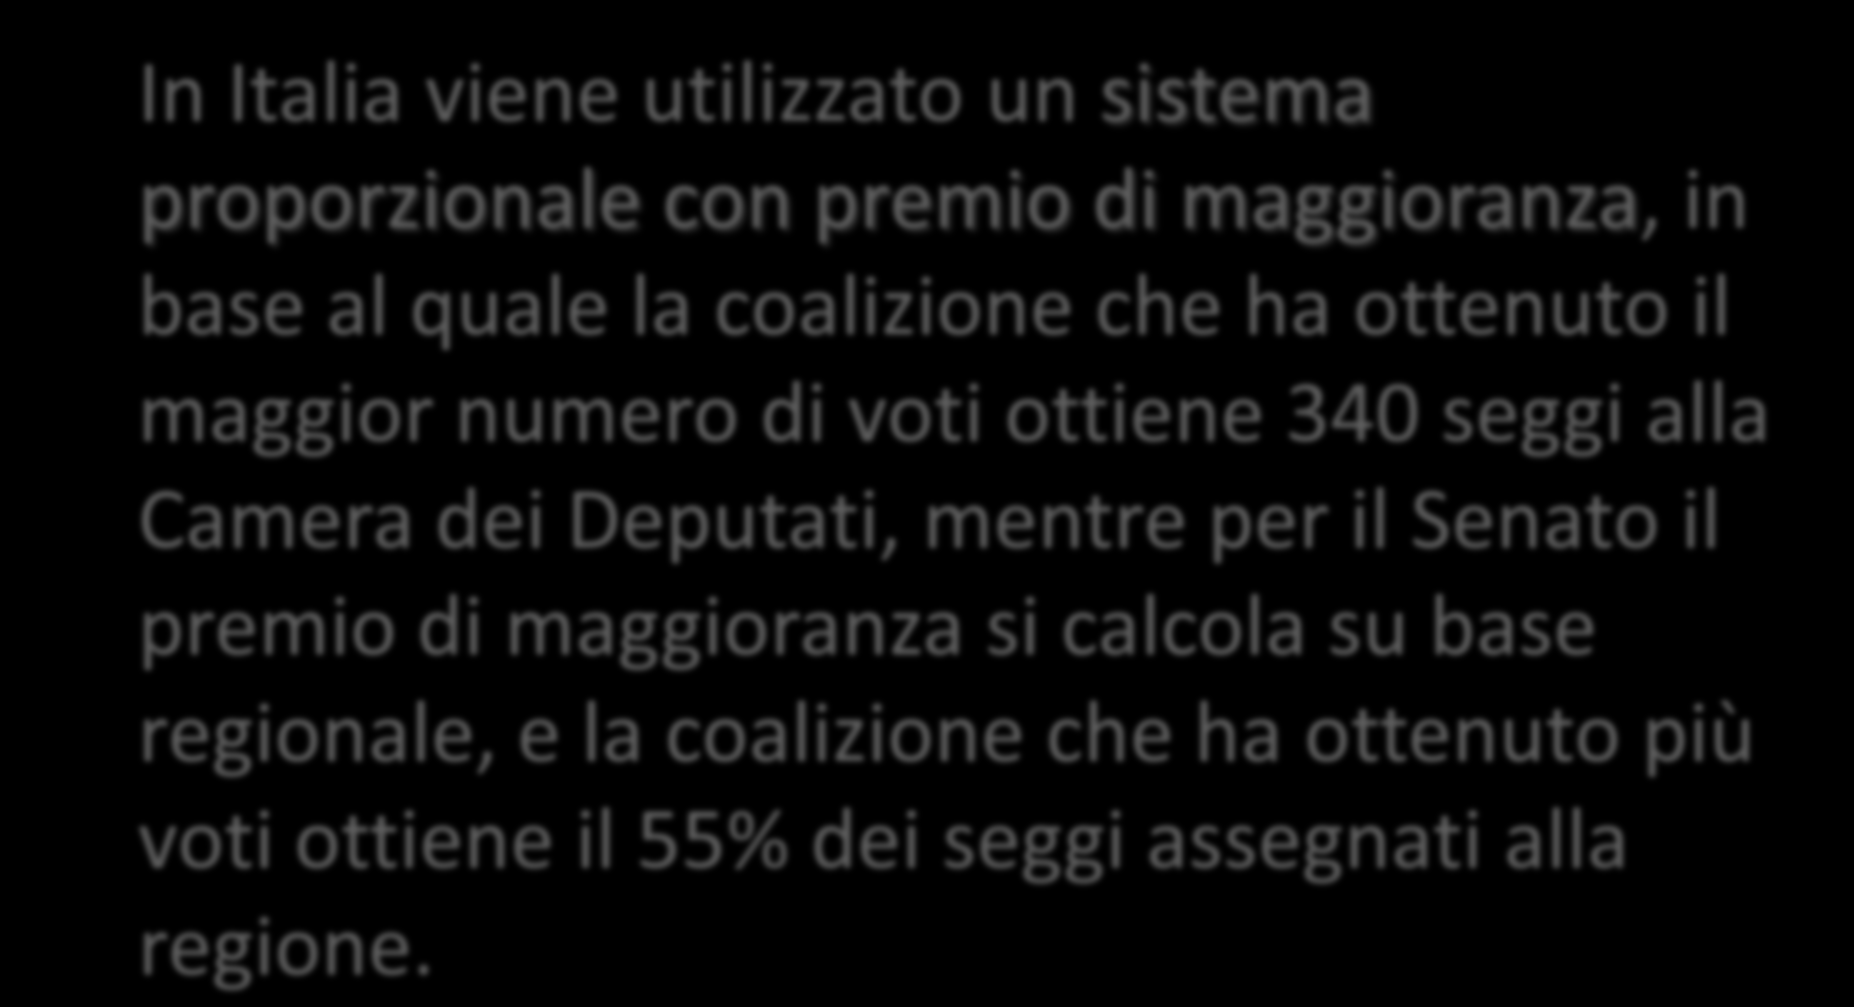 IL SISTEMA ELETTORALE DEL PARLAMENTO ITALIANO In Italia viene utilizzato un sistema proporzionale con premio di maggioranza, in base al quale la coalizione che ha ottenuto il maggior numero di voti